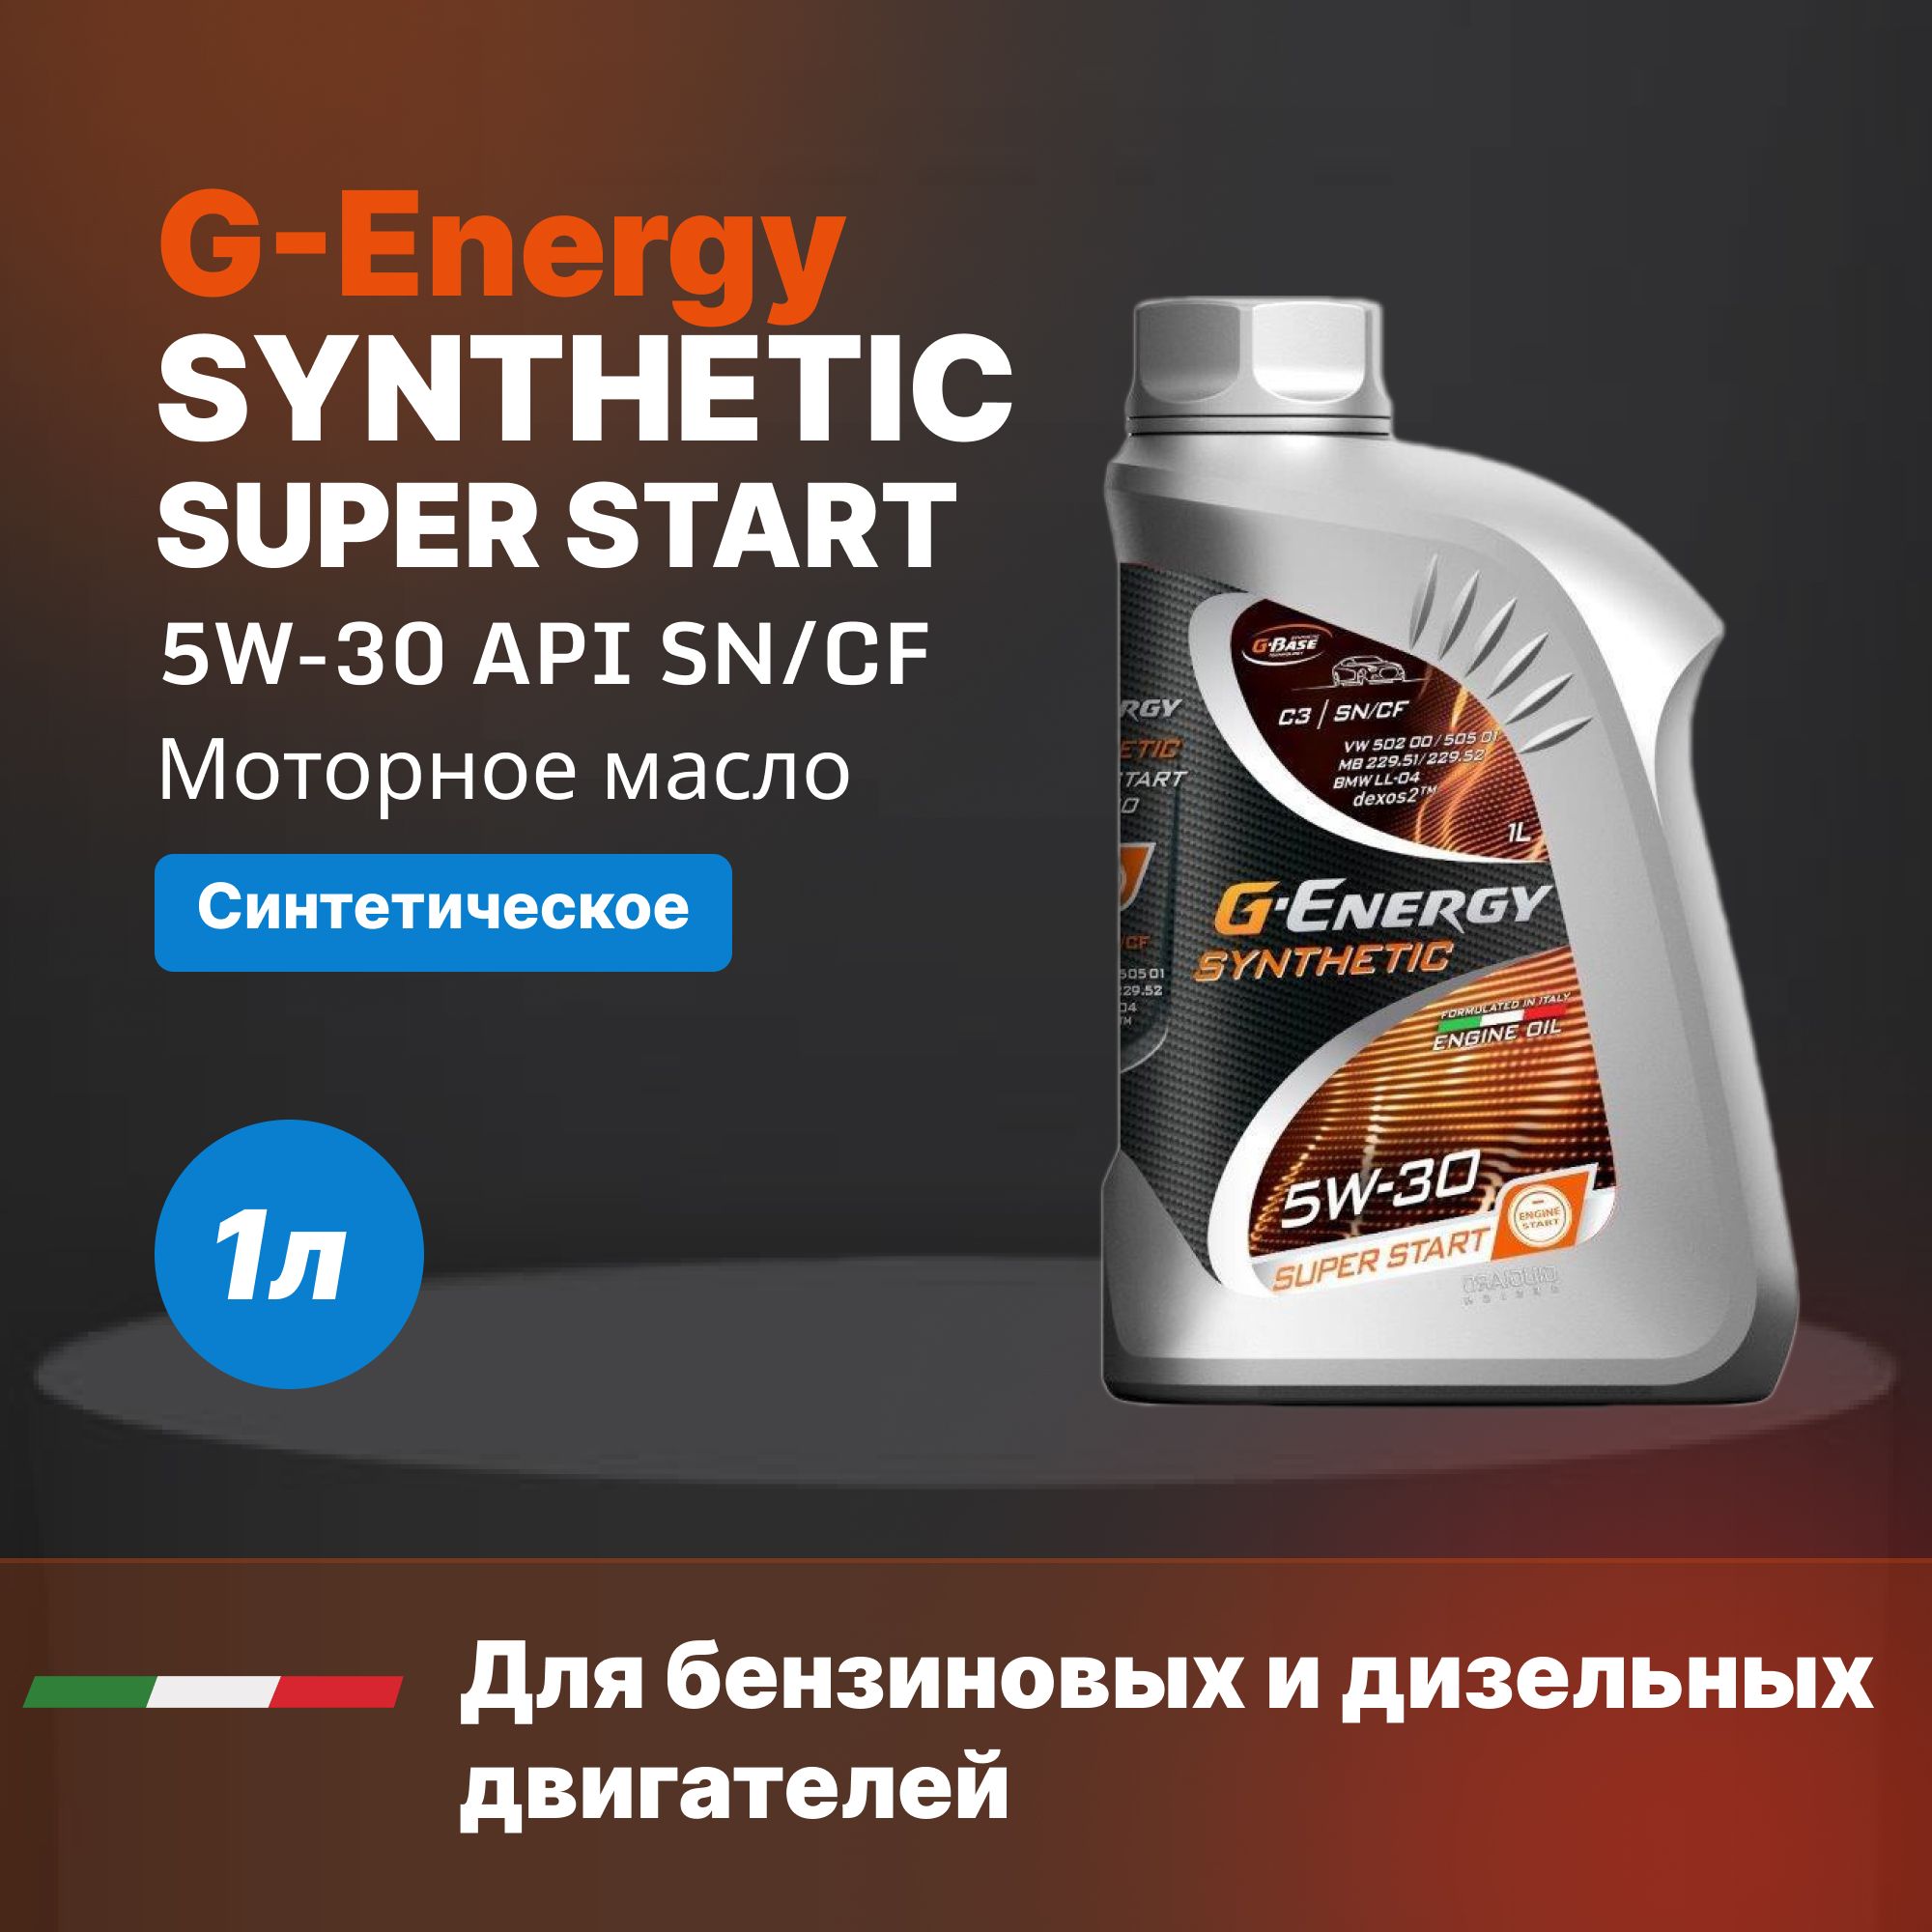 Масло g energy super start. G Energy 5w30 super start. G-Energy Synthetic super start 5w-30. G Energy 5w30 Active. G-Energy Synthetic super start 5w-30 1л.